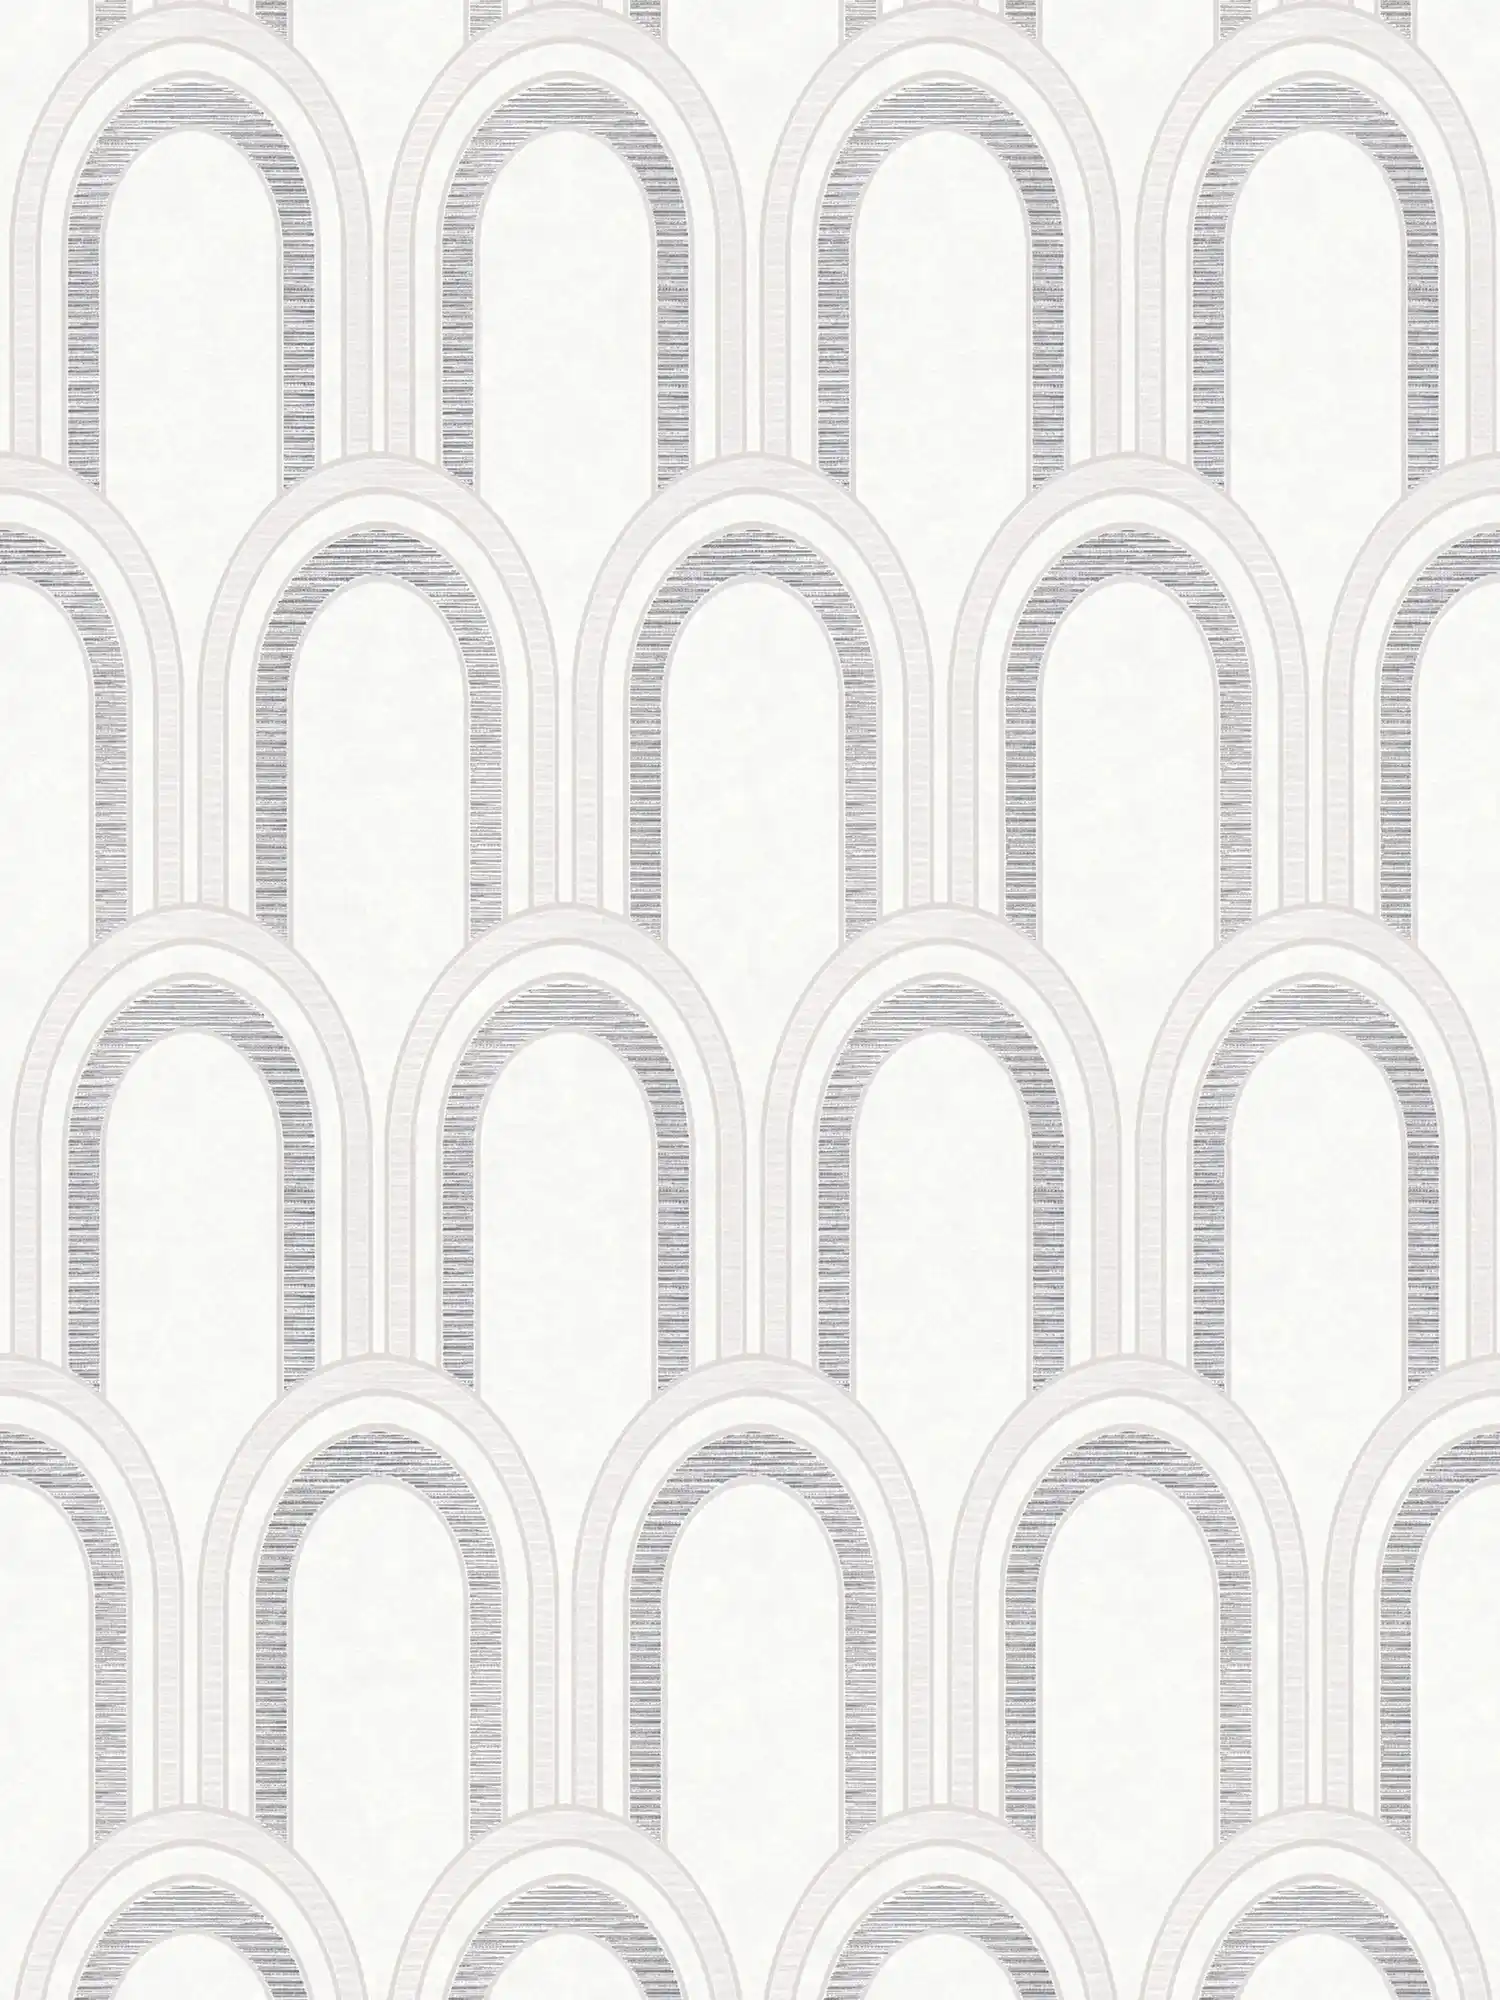         Carta da parati in tessuto non tessuto in look fiocco con effetto lucido - bianco, grigio, argento
    